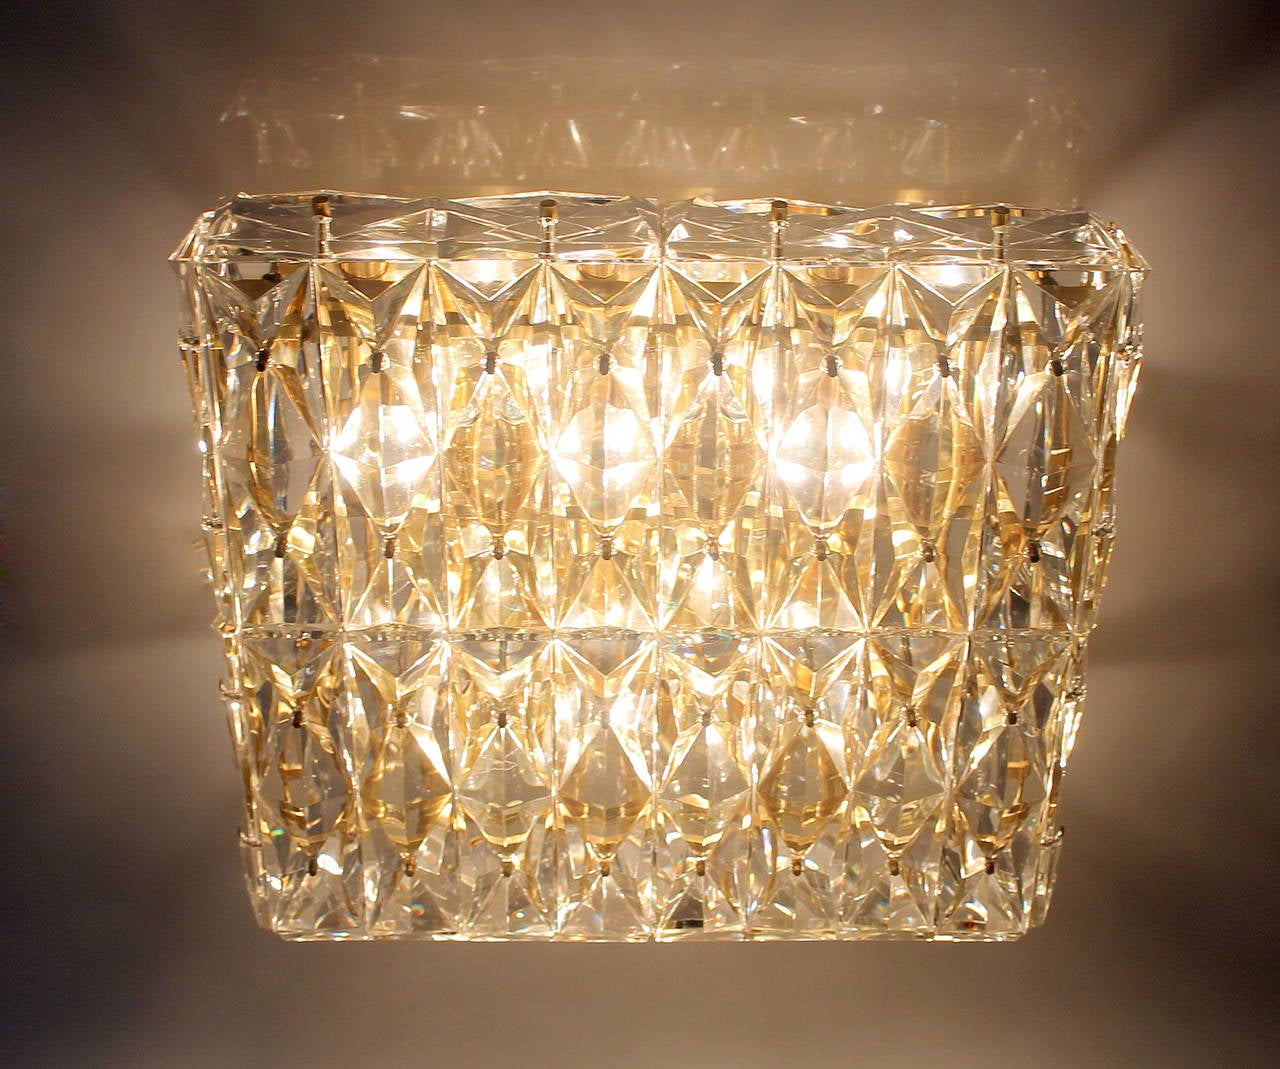 Kinkeldey Crystal Flush Light Chandelier Antique Lighting Brass Ceiling Austrian 3